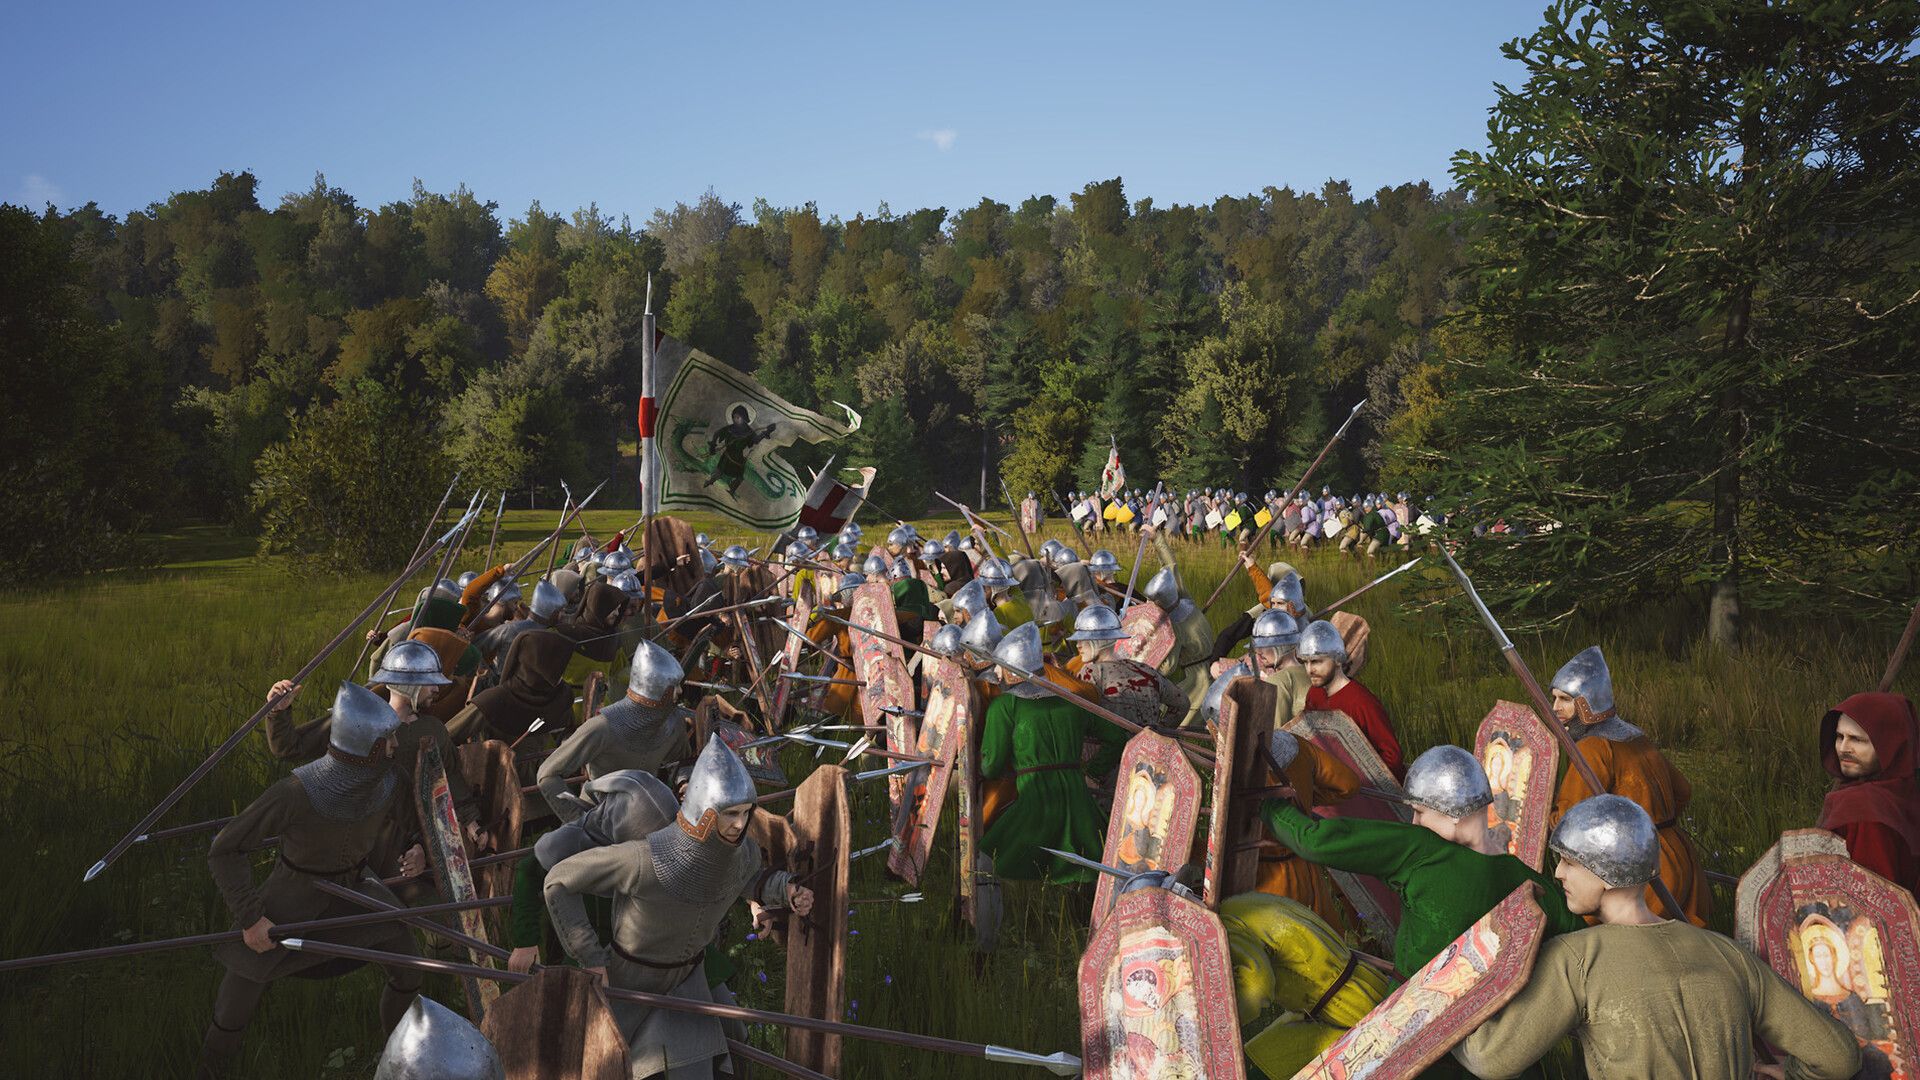 Uma batalha em senhores senhoriais com soldados usando capacetes de ferro atacando uns aos outros com lanças e espadas em um exuberante campo rural